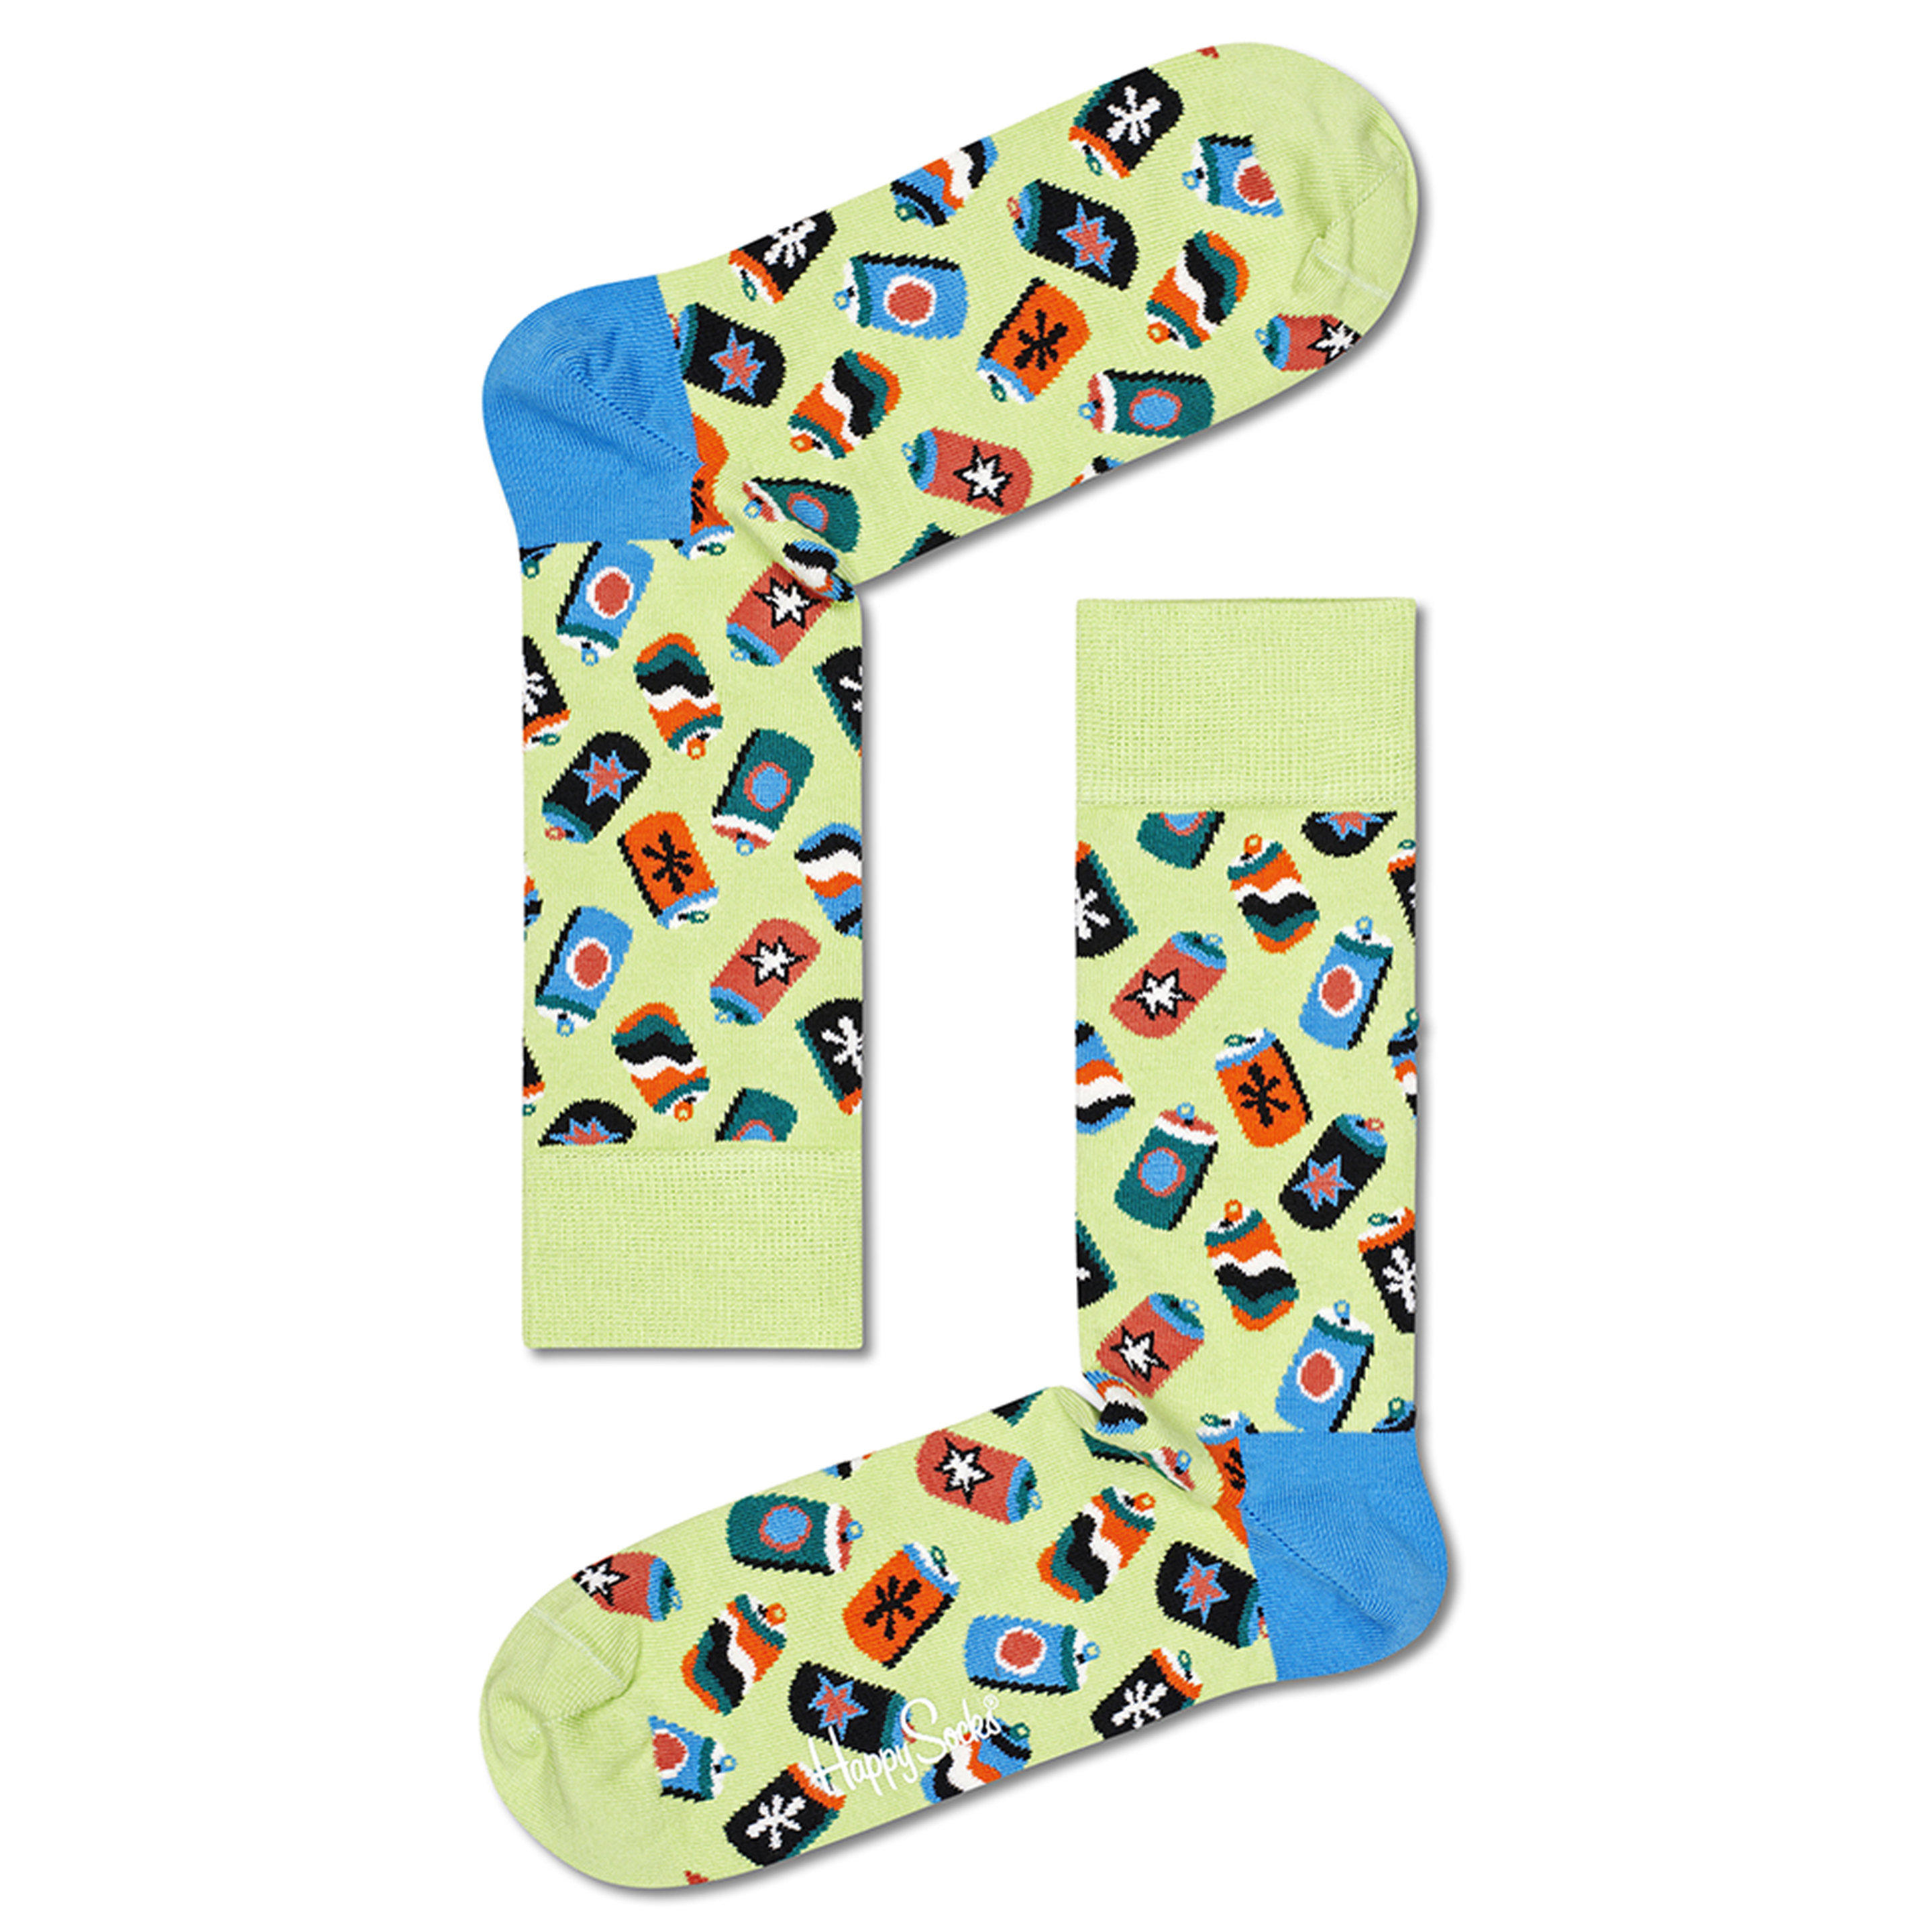 Calcetines Happy Socks Refresco - Multicolor  MKP